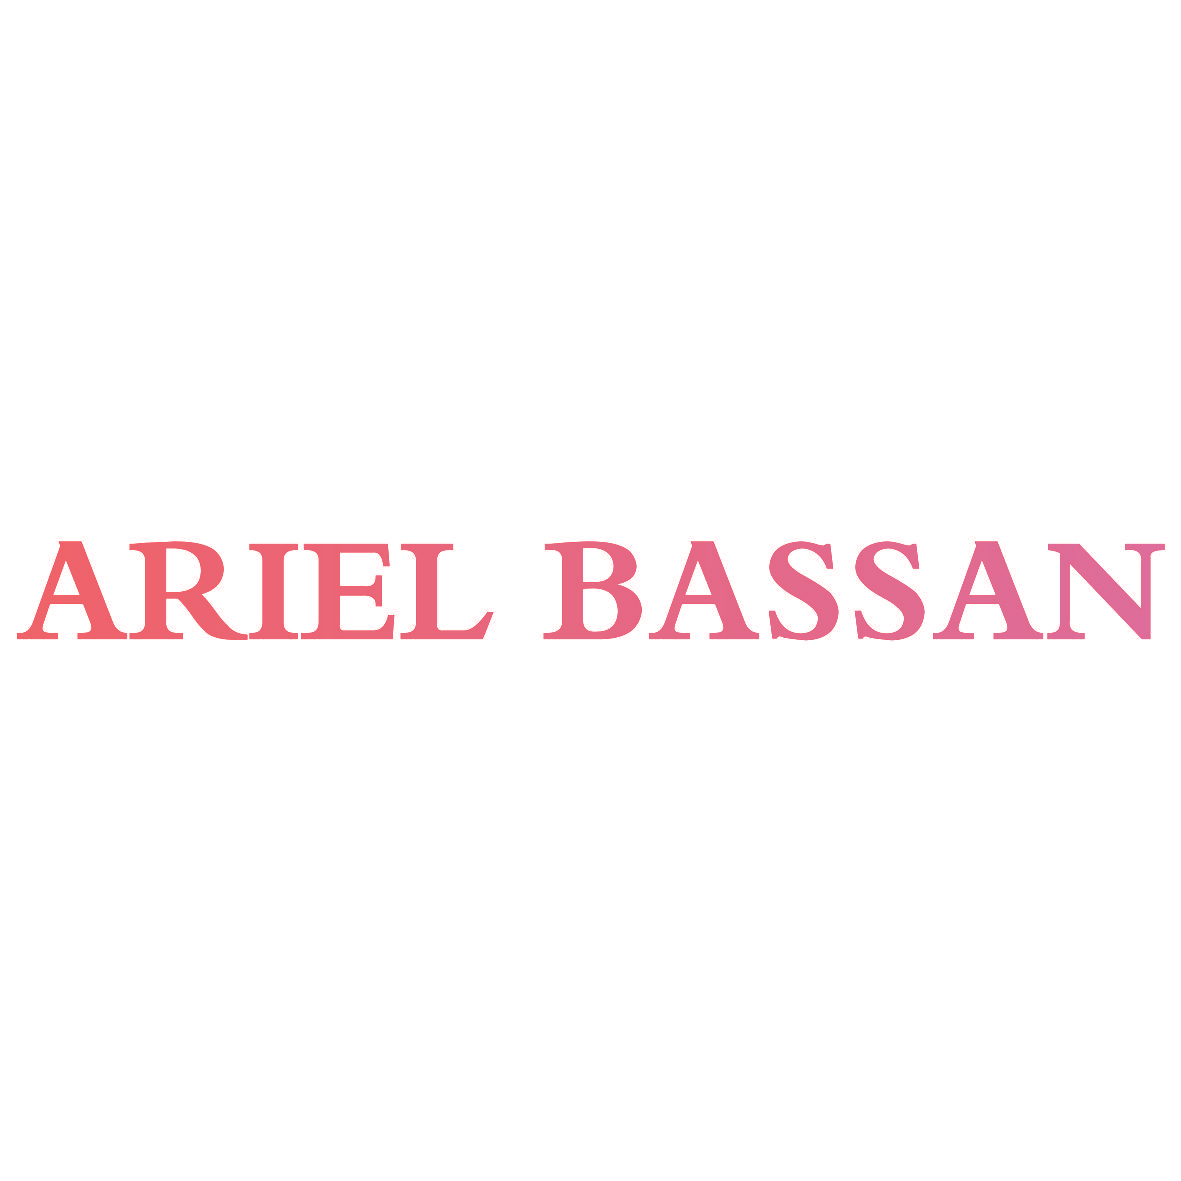 ARIEL BASSAN